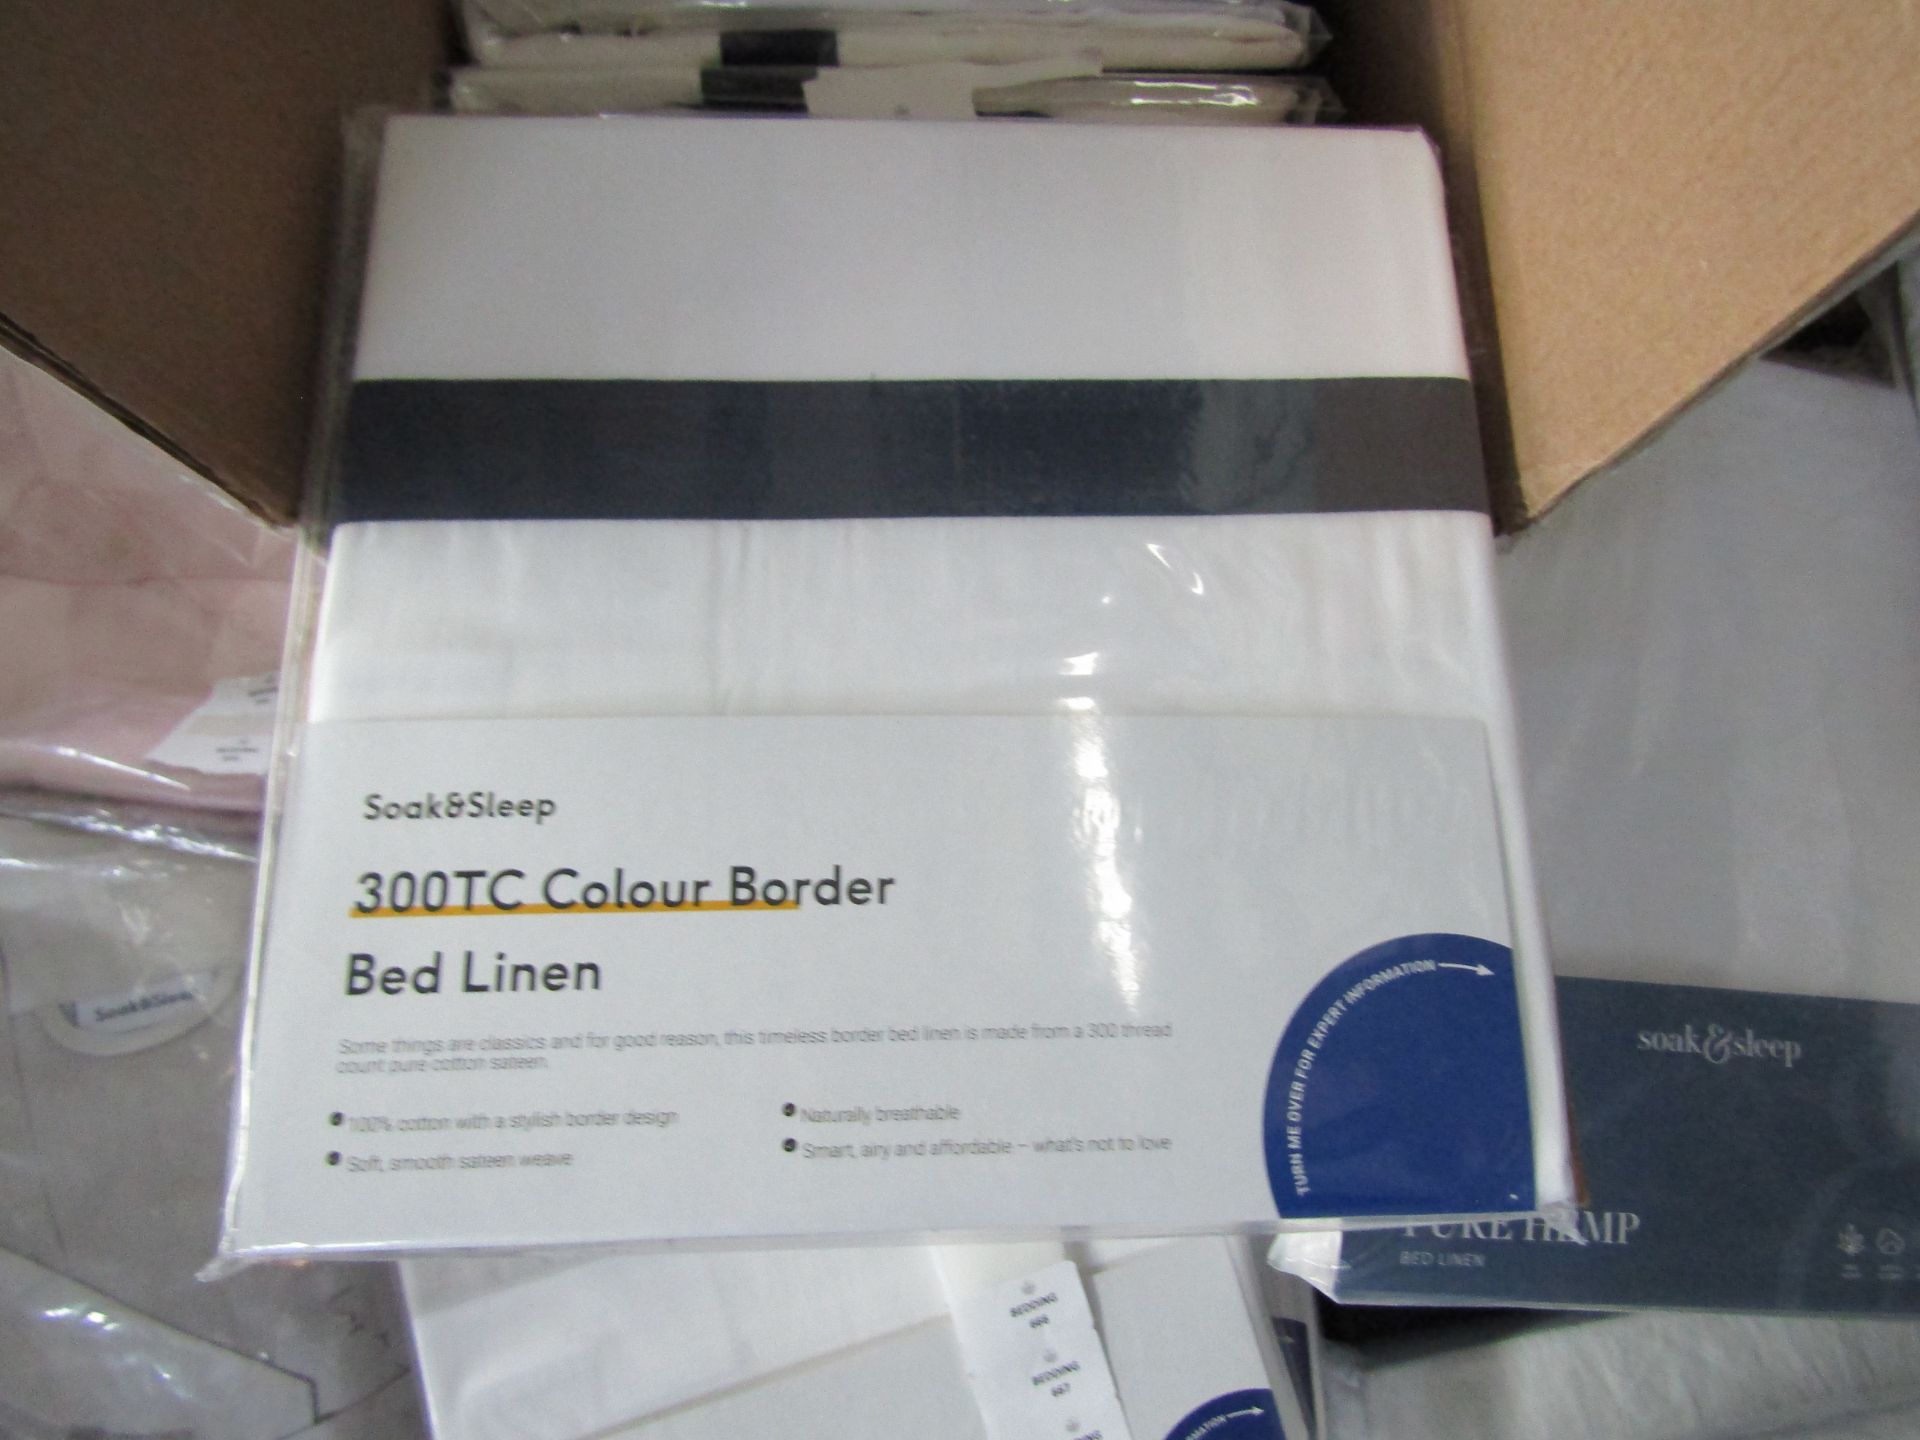 Soak & Sleep White/Navy 300TC Colour Border Cotton Standard Housewife Pillowcase Pair RRP 07About